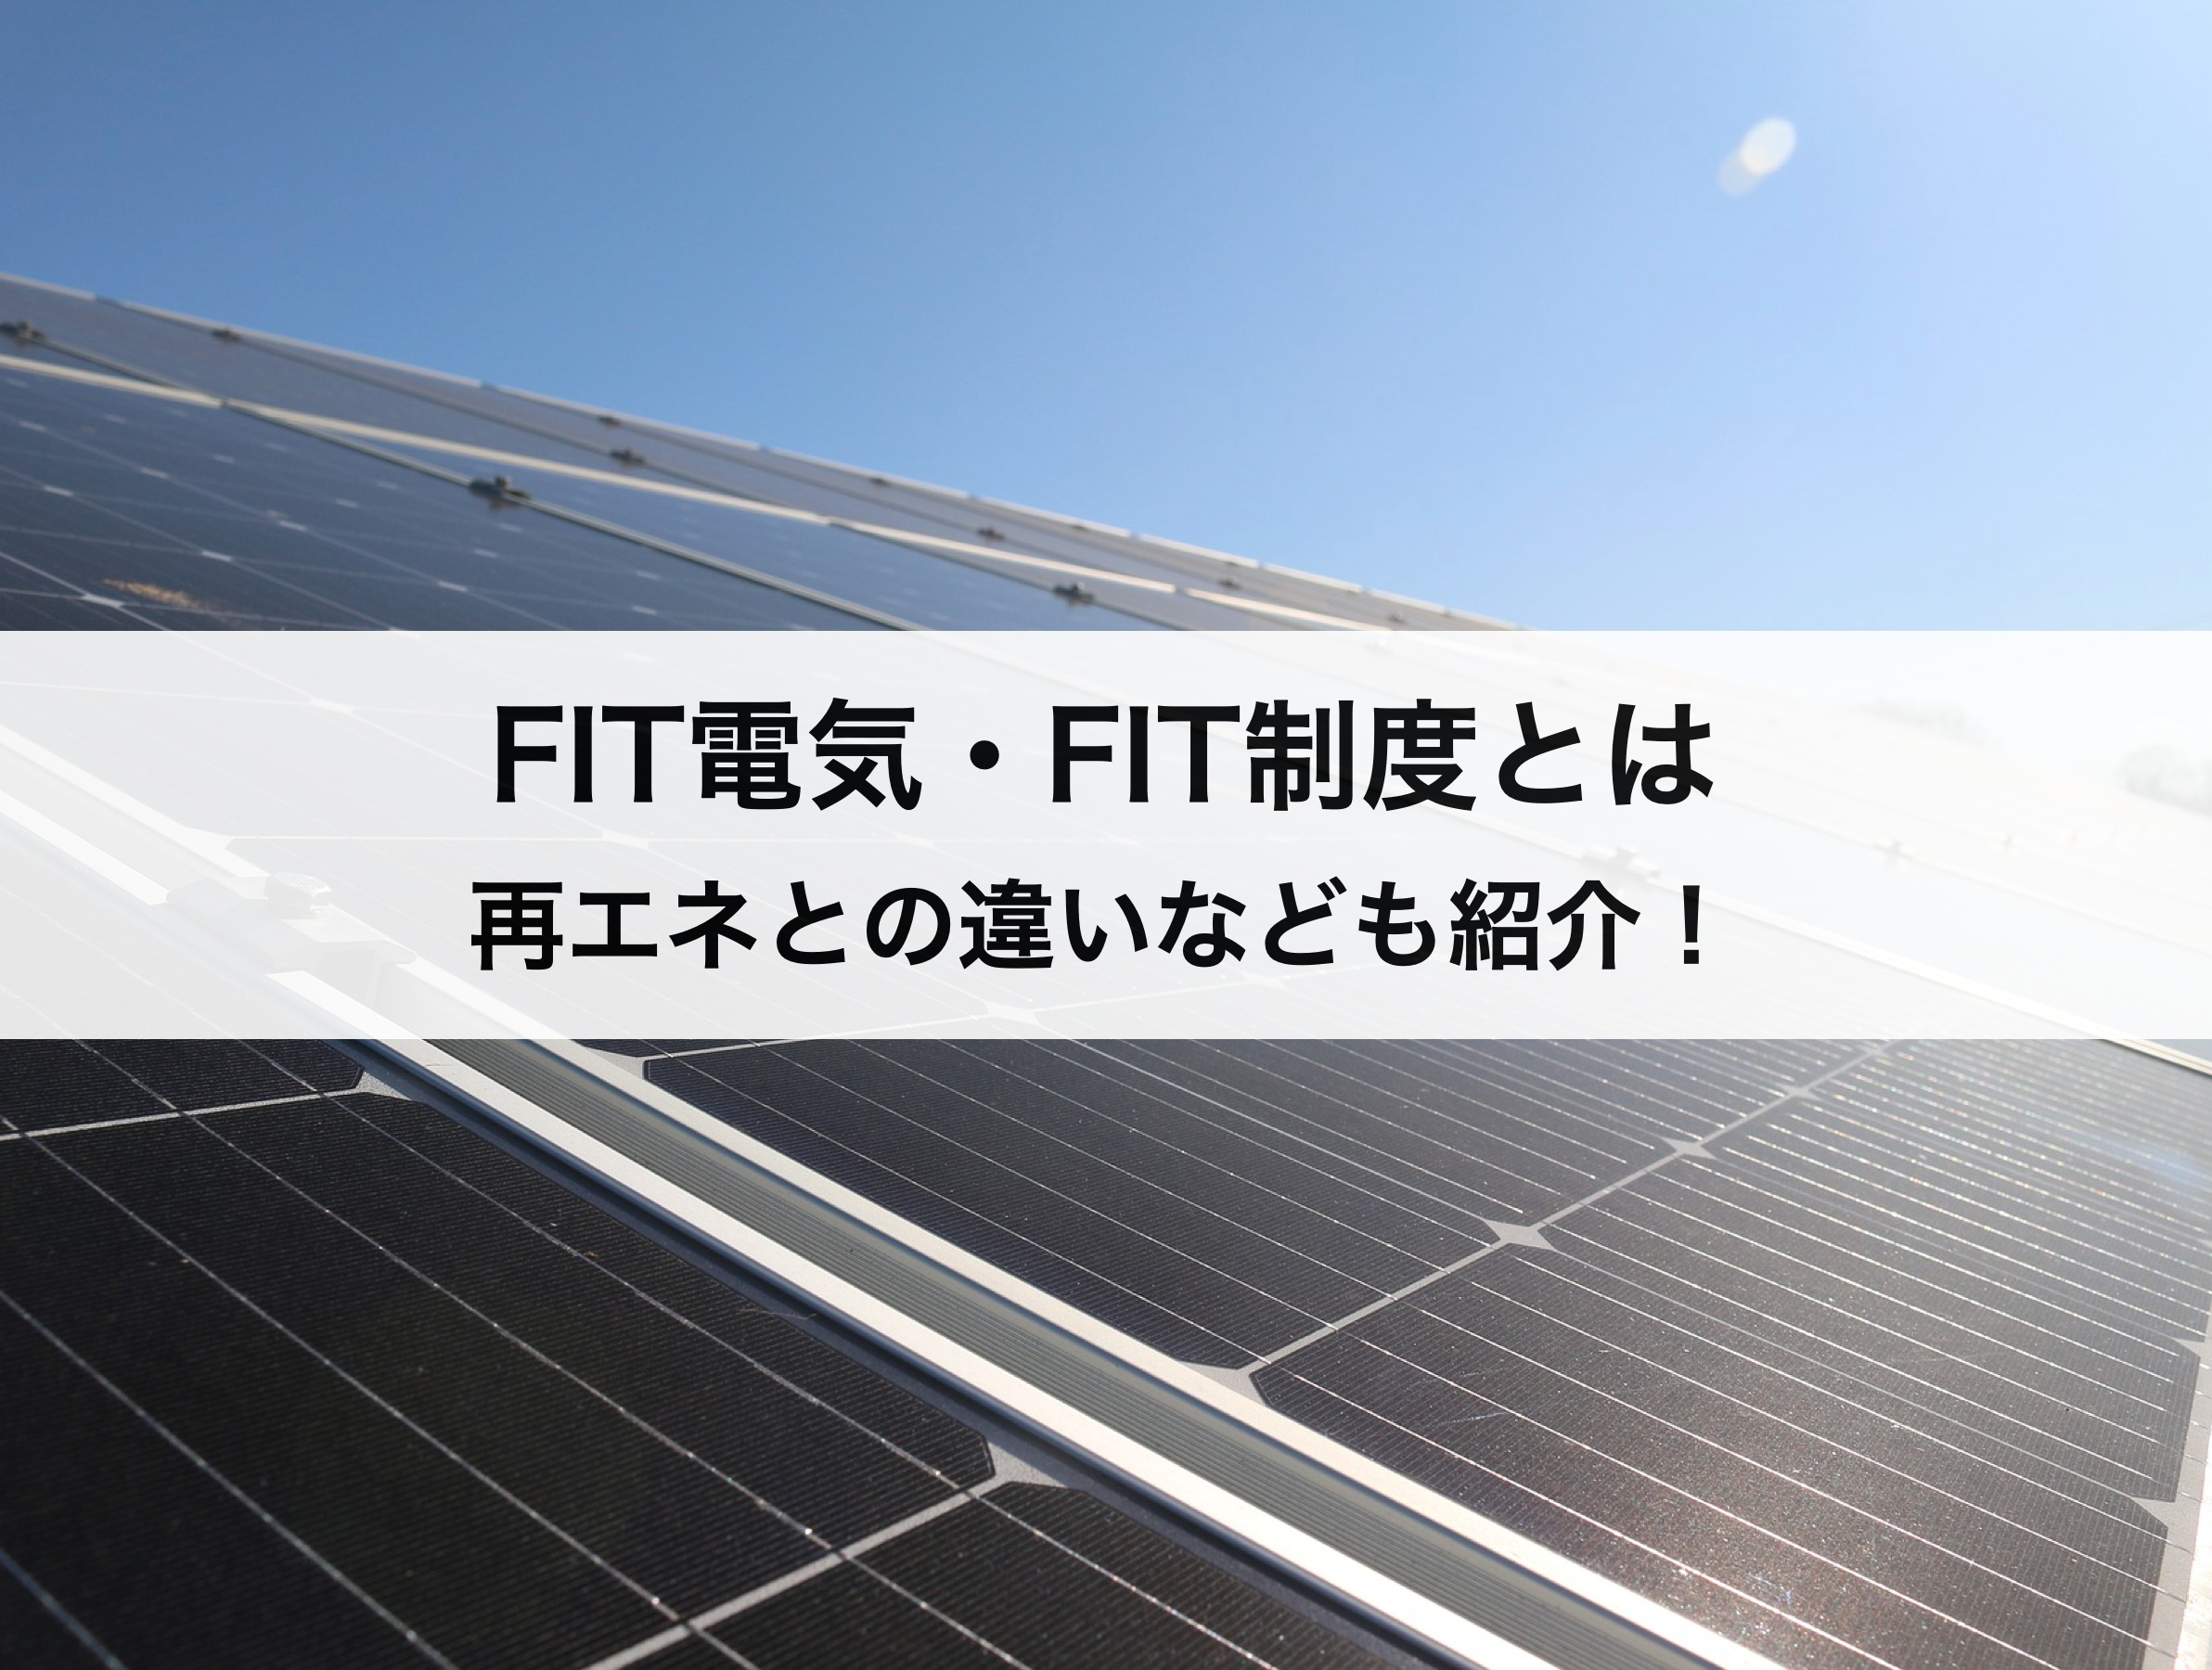 FIT電気・FIT制度(固定価格買取制度)とは？再生可能エネルギーとの違いなどわかりやすく徹底解説！